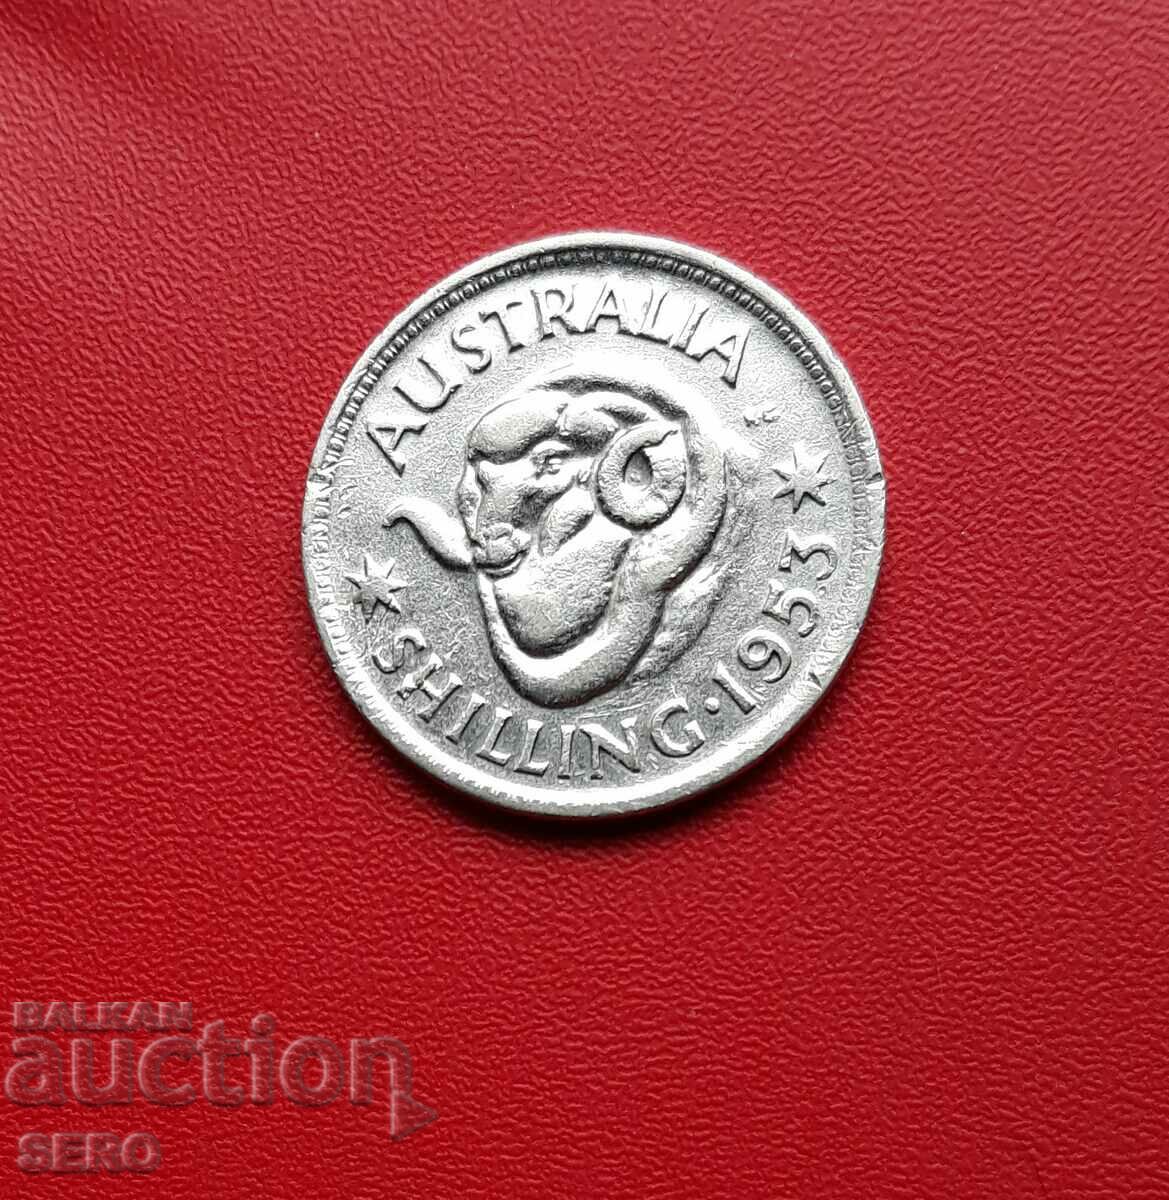 Australia-1 Shilling 1953